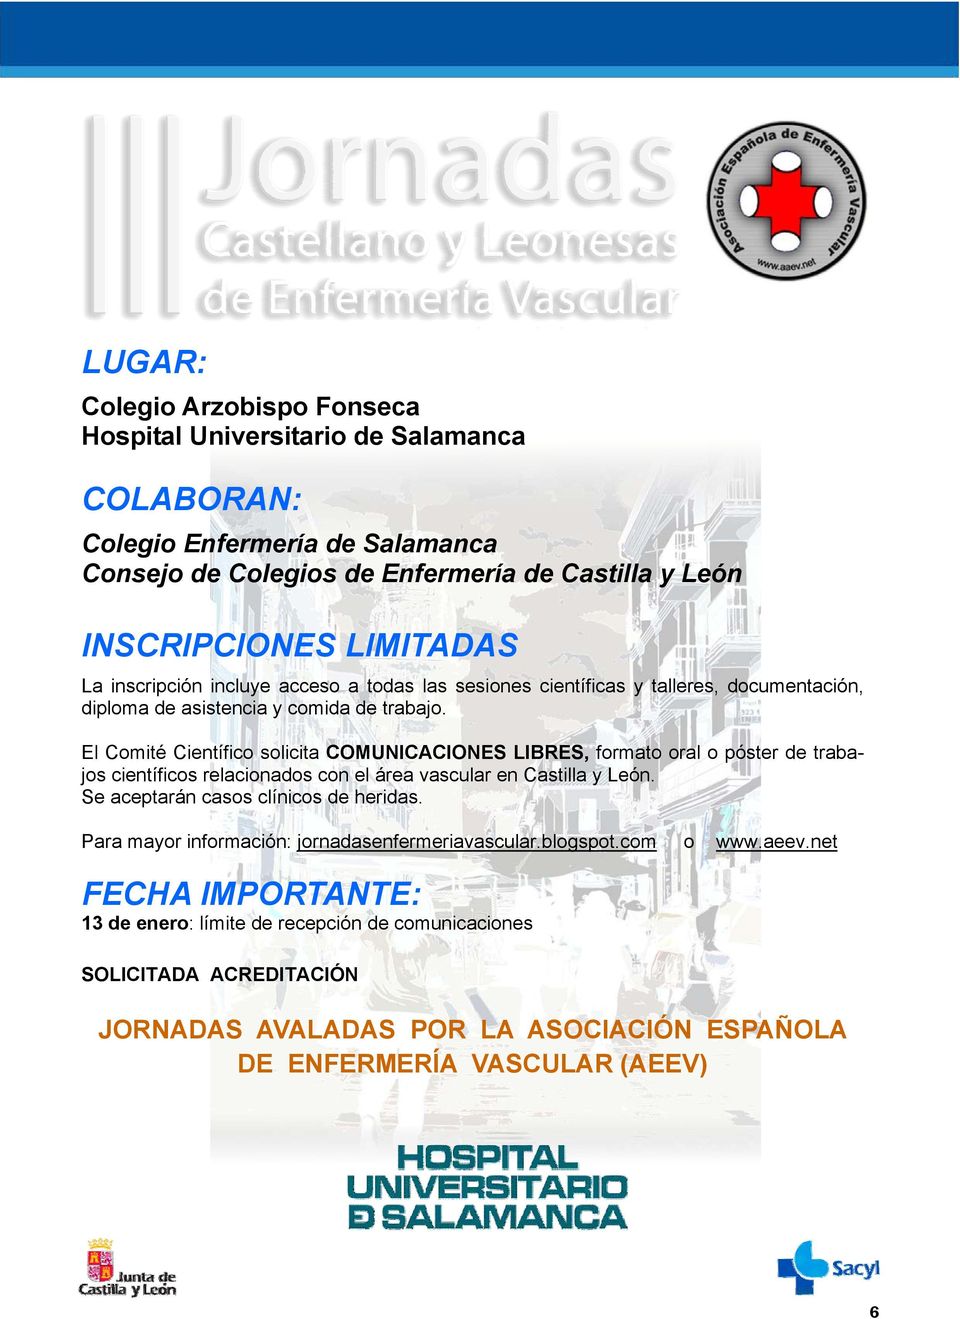 El Comité Científico solicita COMUNICACIONES LIBRES, formato oral o póster de trabajos científicos relacionados con el área vascular en Castilla y León.